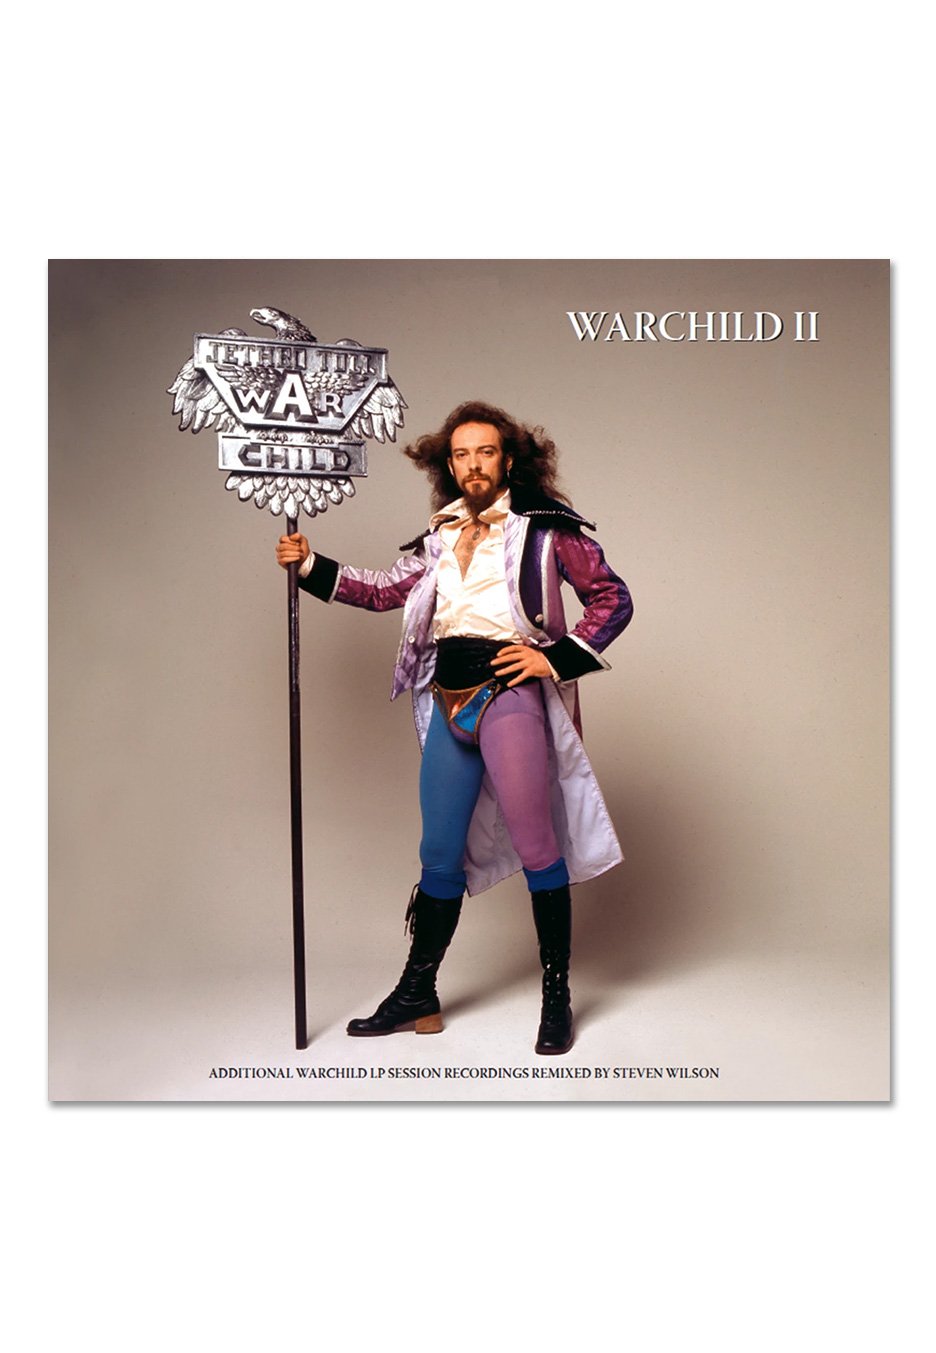 Jethro Tull - Warchild II - Vinyl